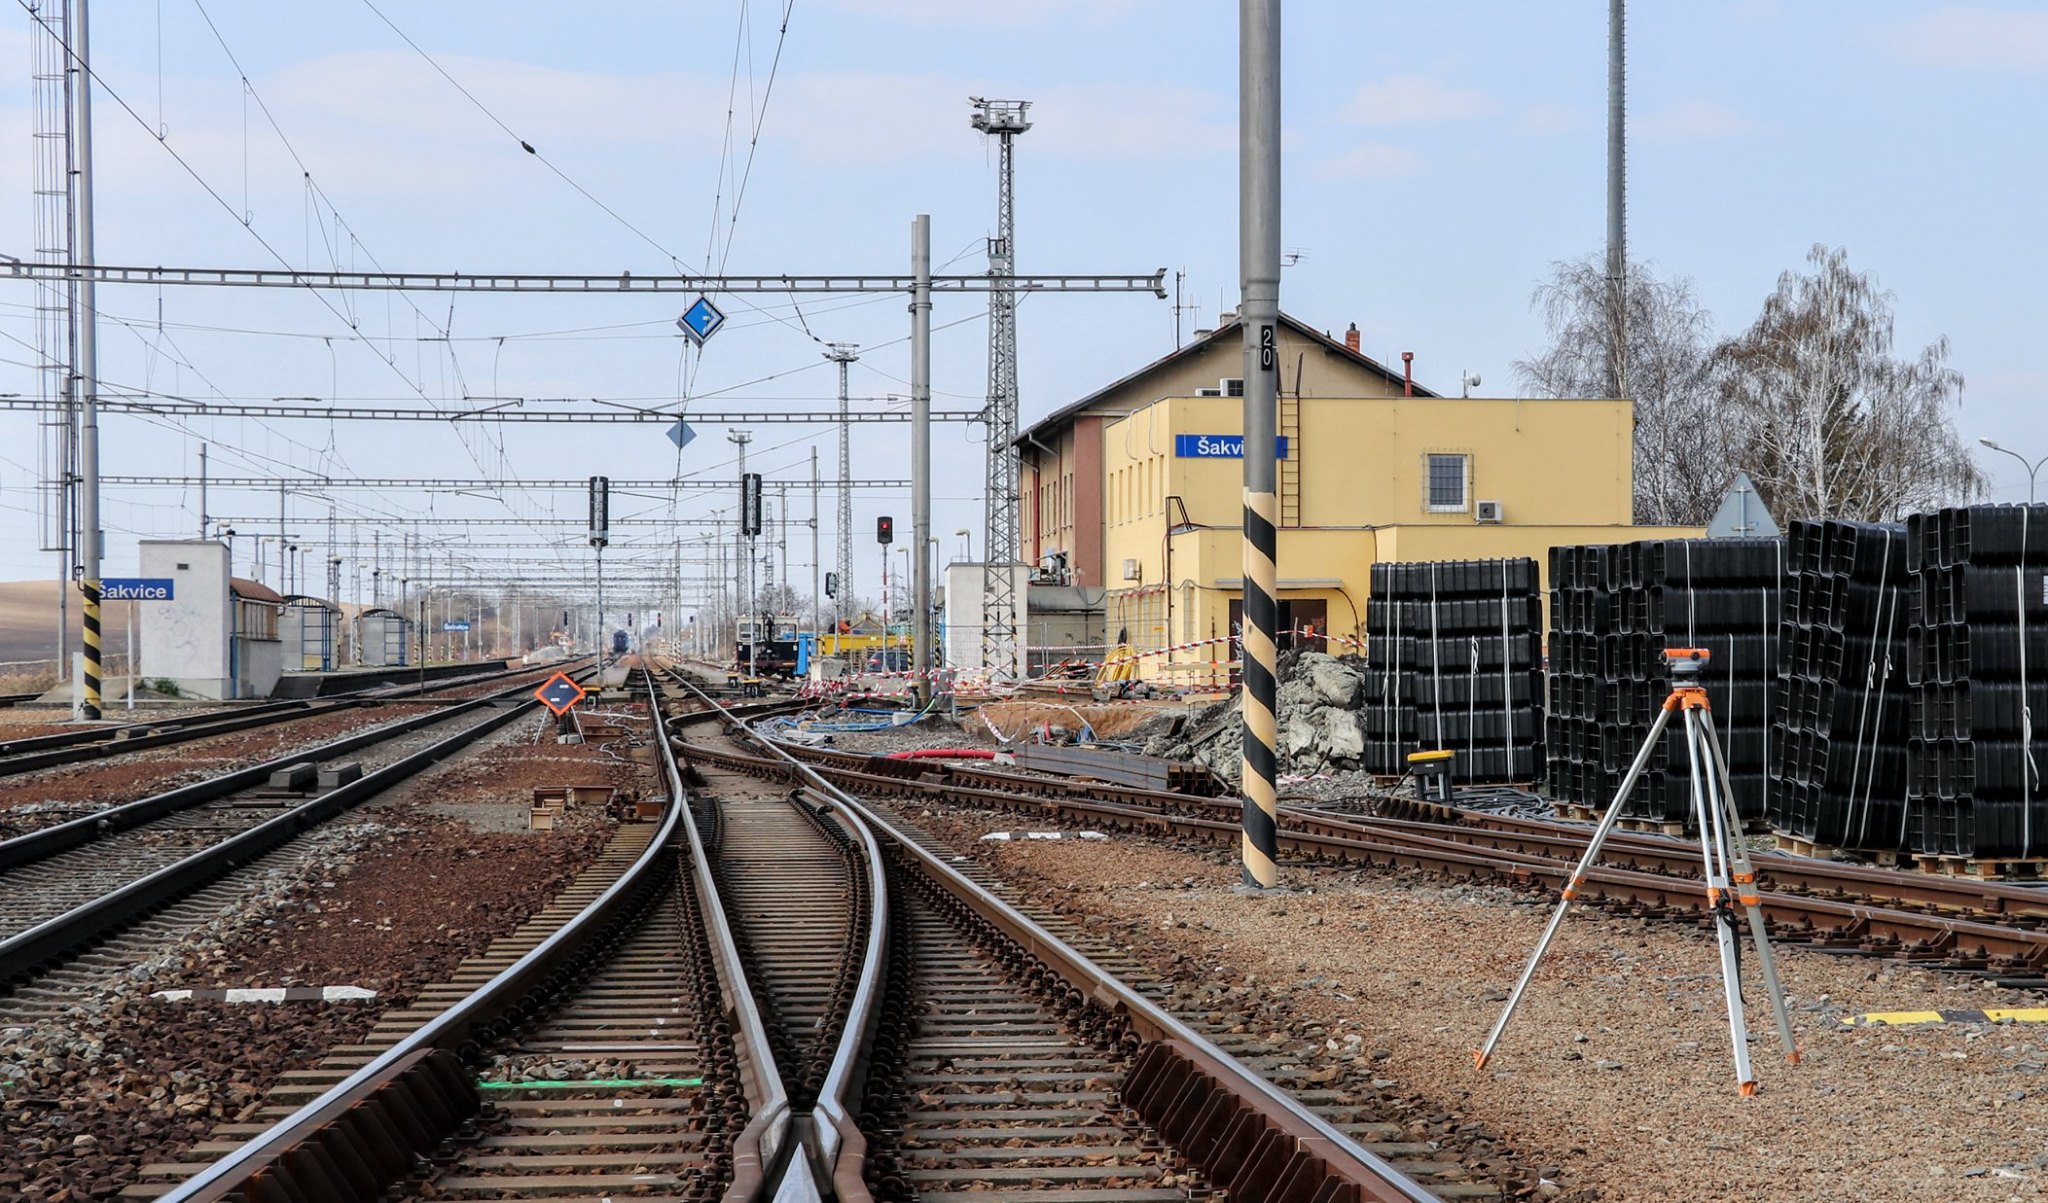 Stanice Šakvice bude mít nové nástupiště a podchod